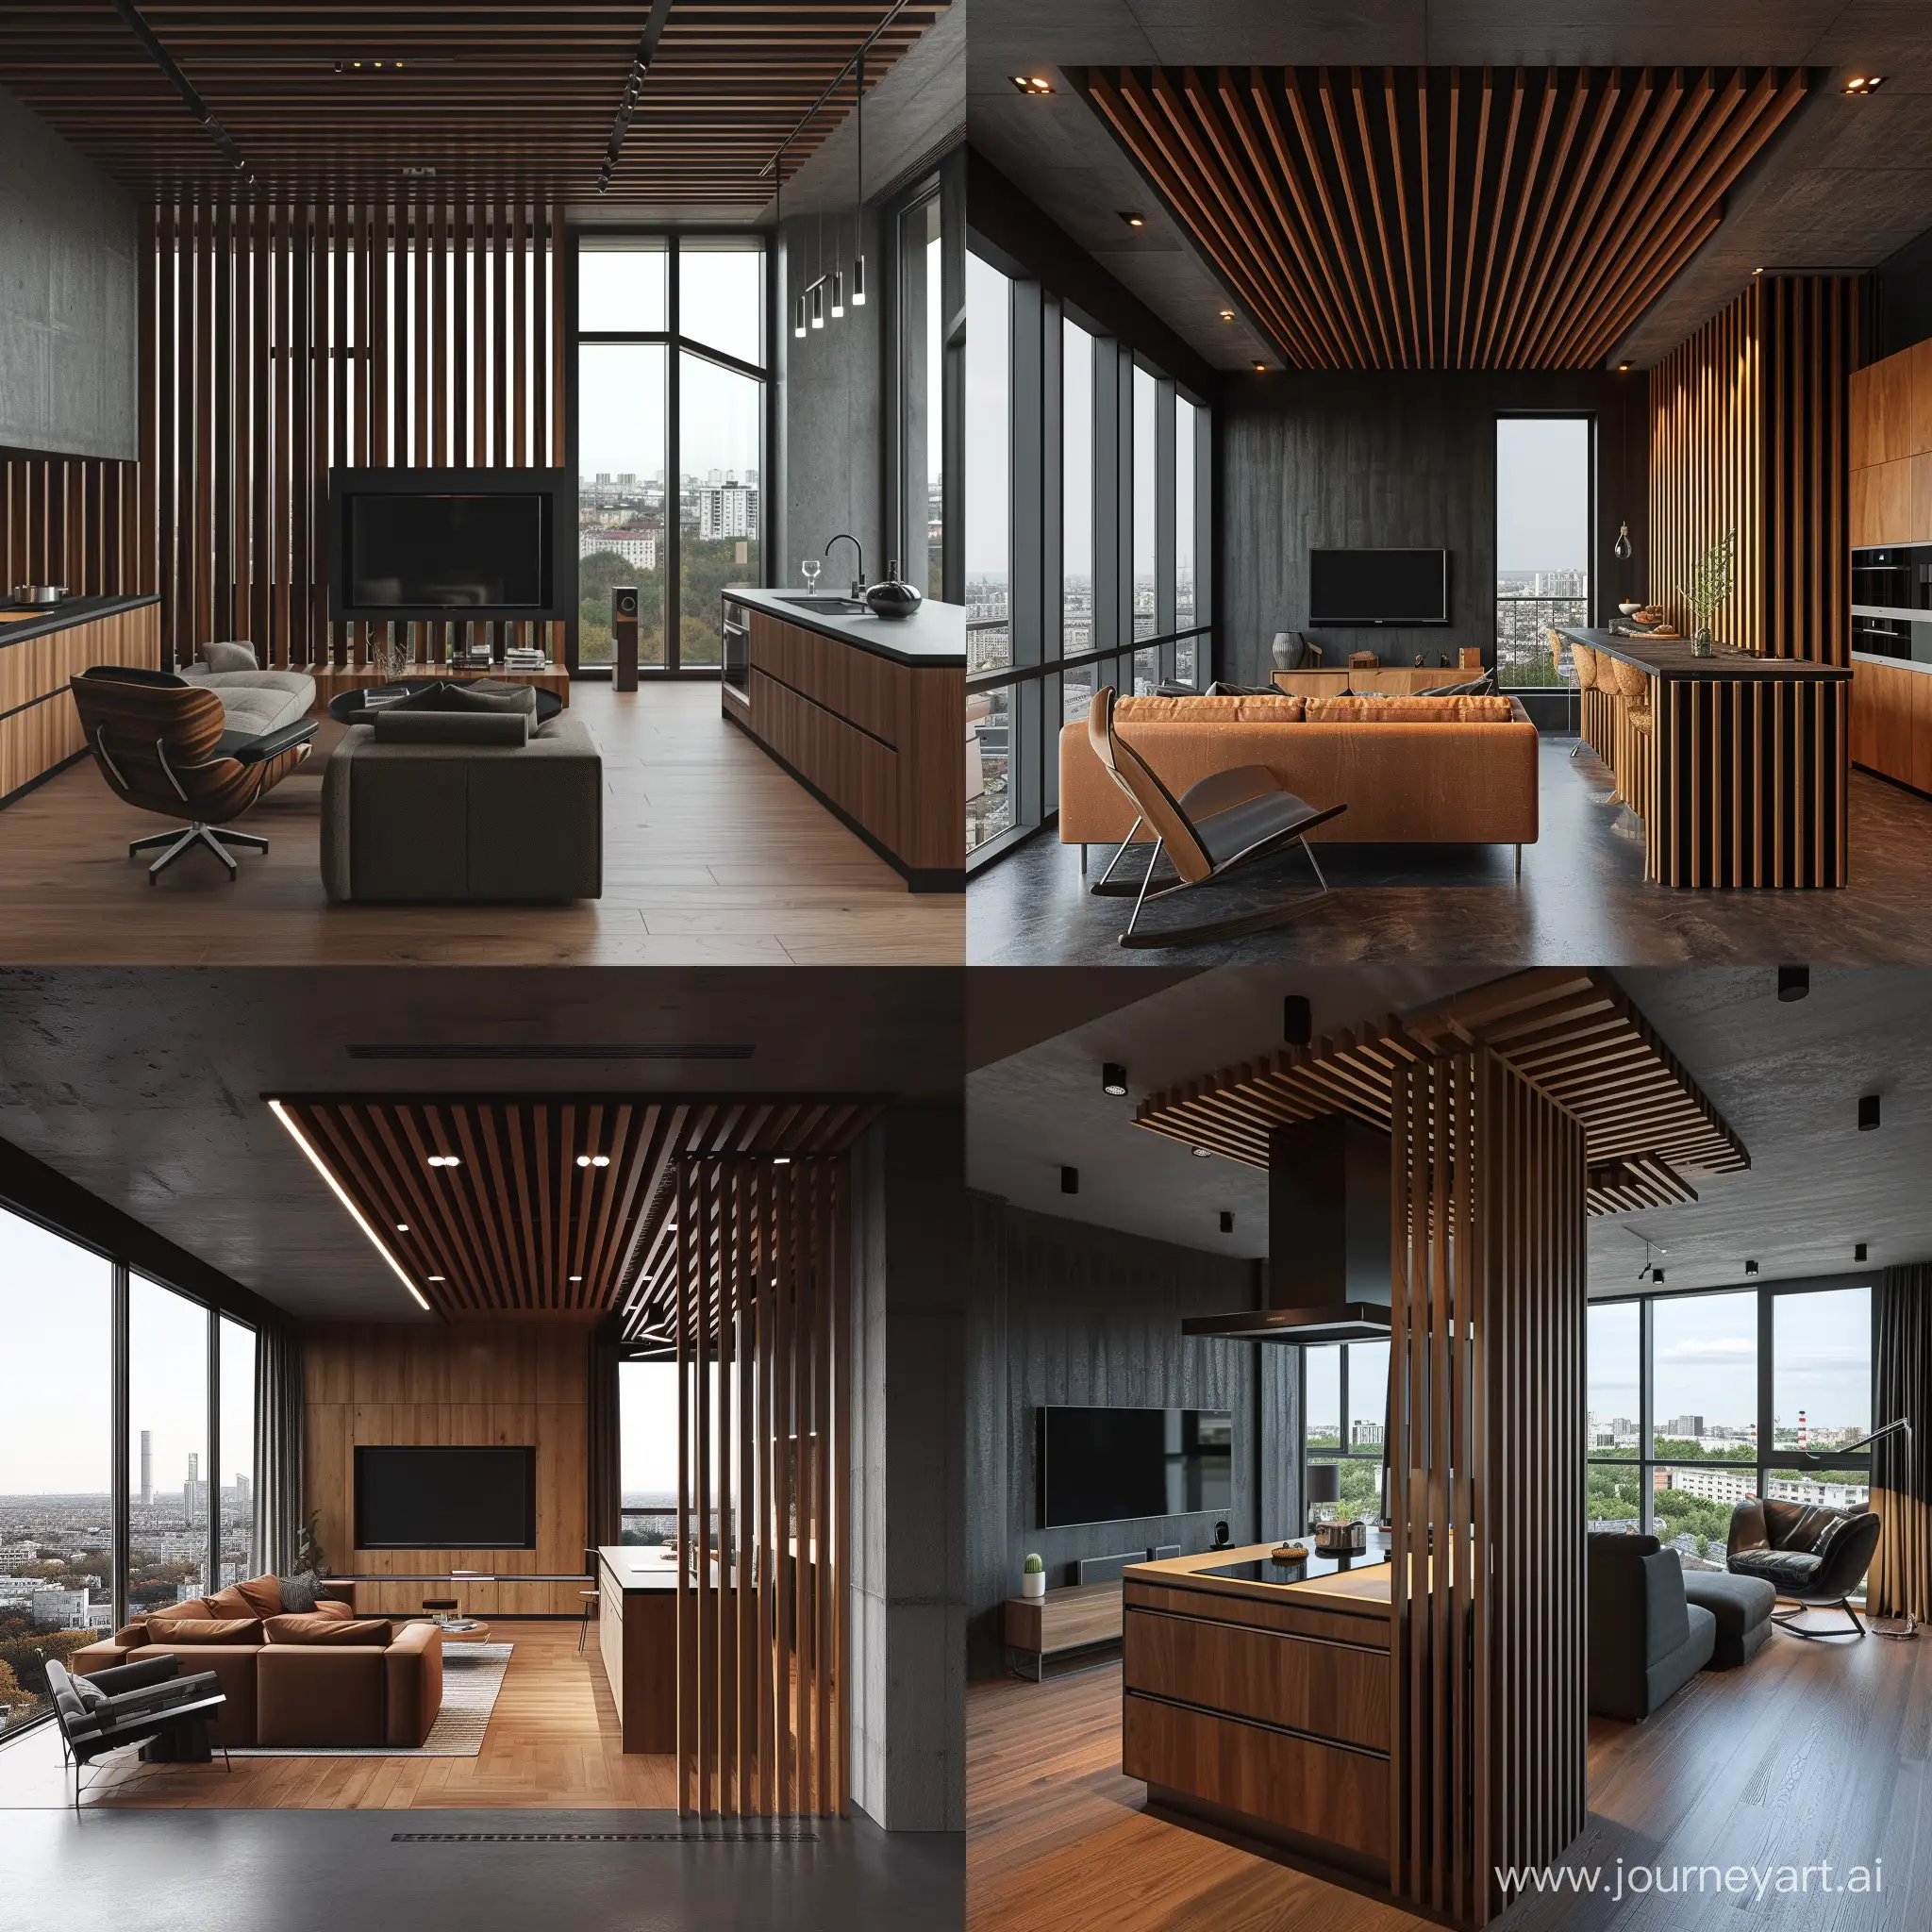 параметрический дизайн в квартире, дерево, рейки, кухня, гостиная, диван, телевизор, кухонный остров, кресло, панорамный вид из окн, бетон, темно серая стена